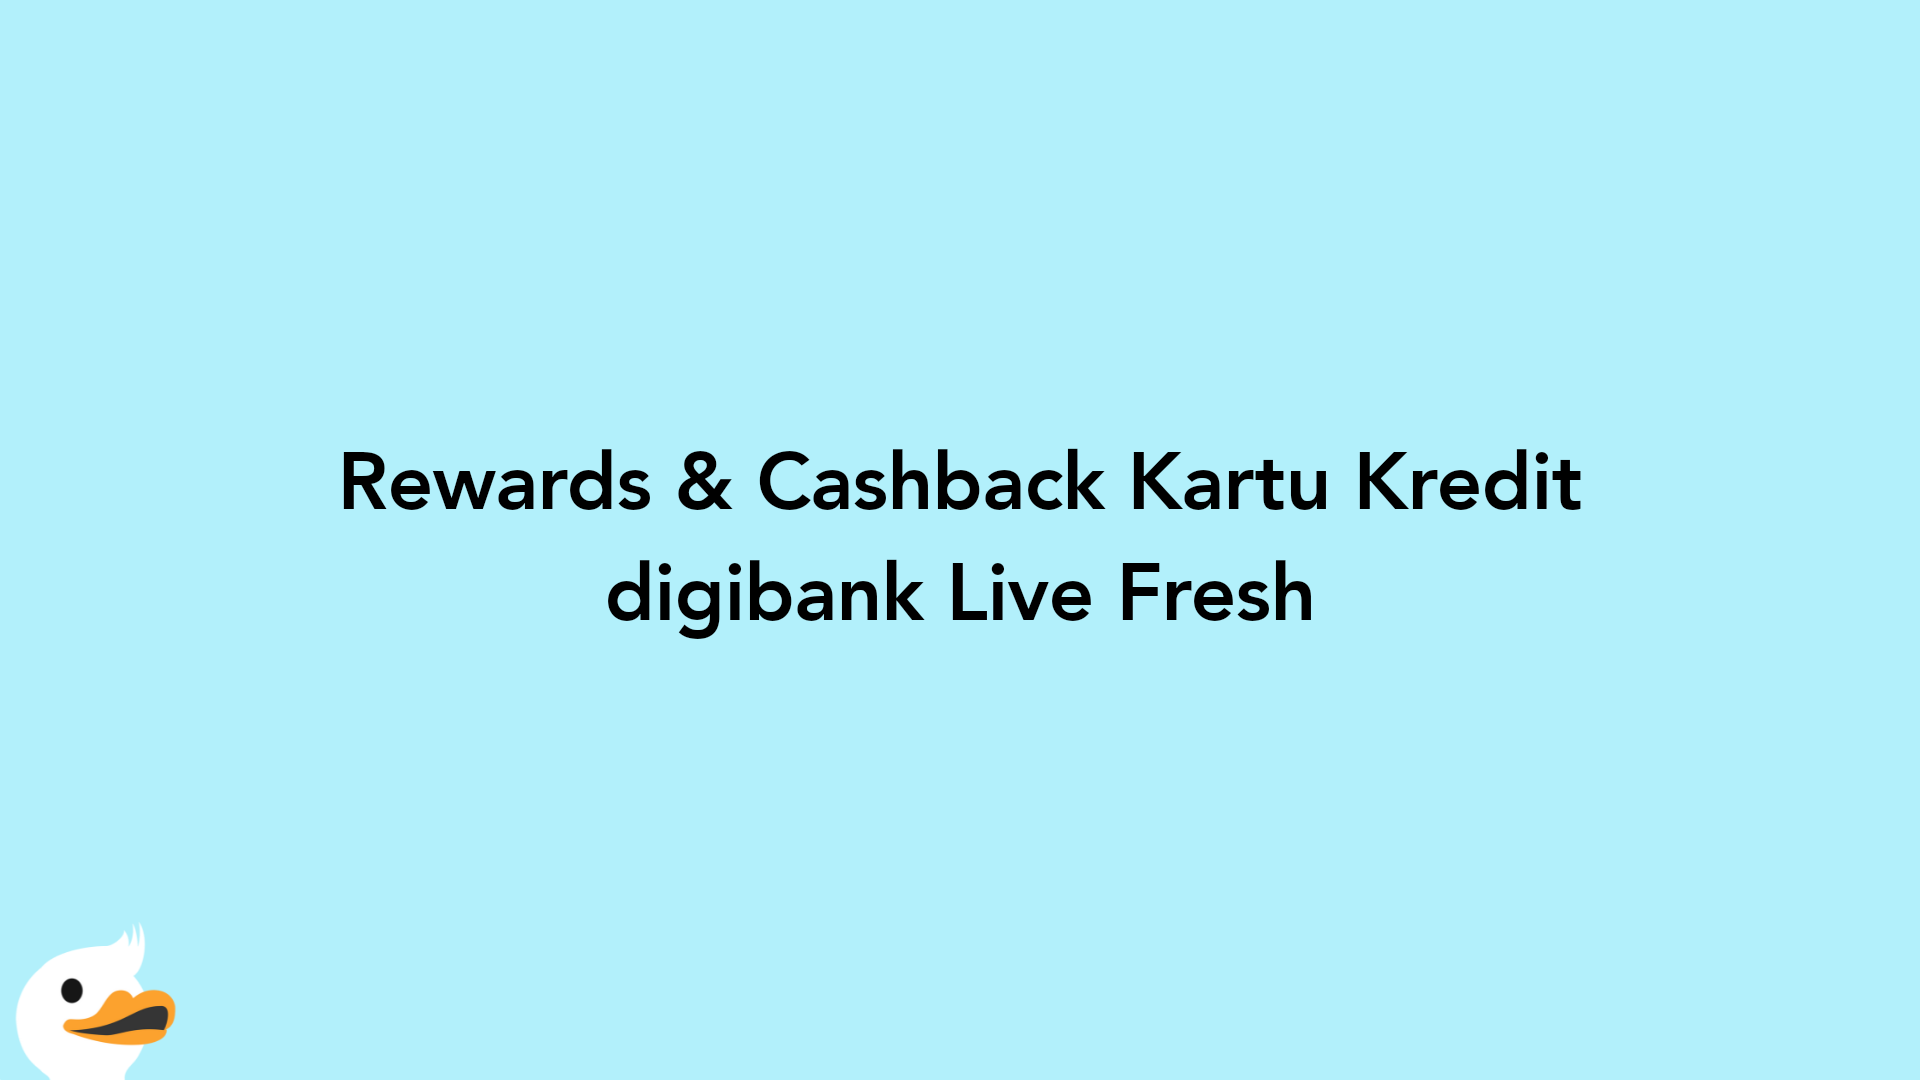 Rewards & Cashback Kartu Kredit digibank Live Fresh